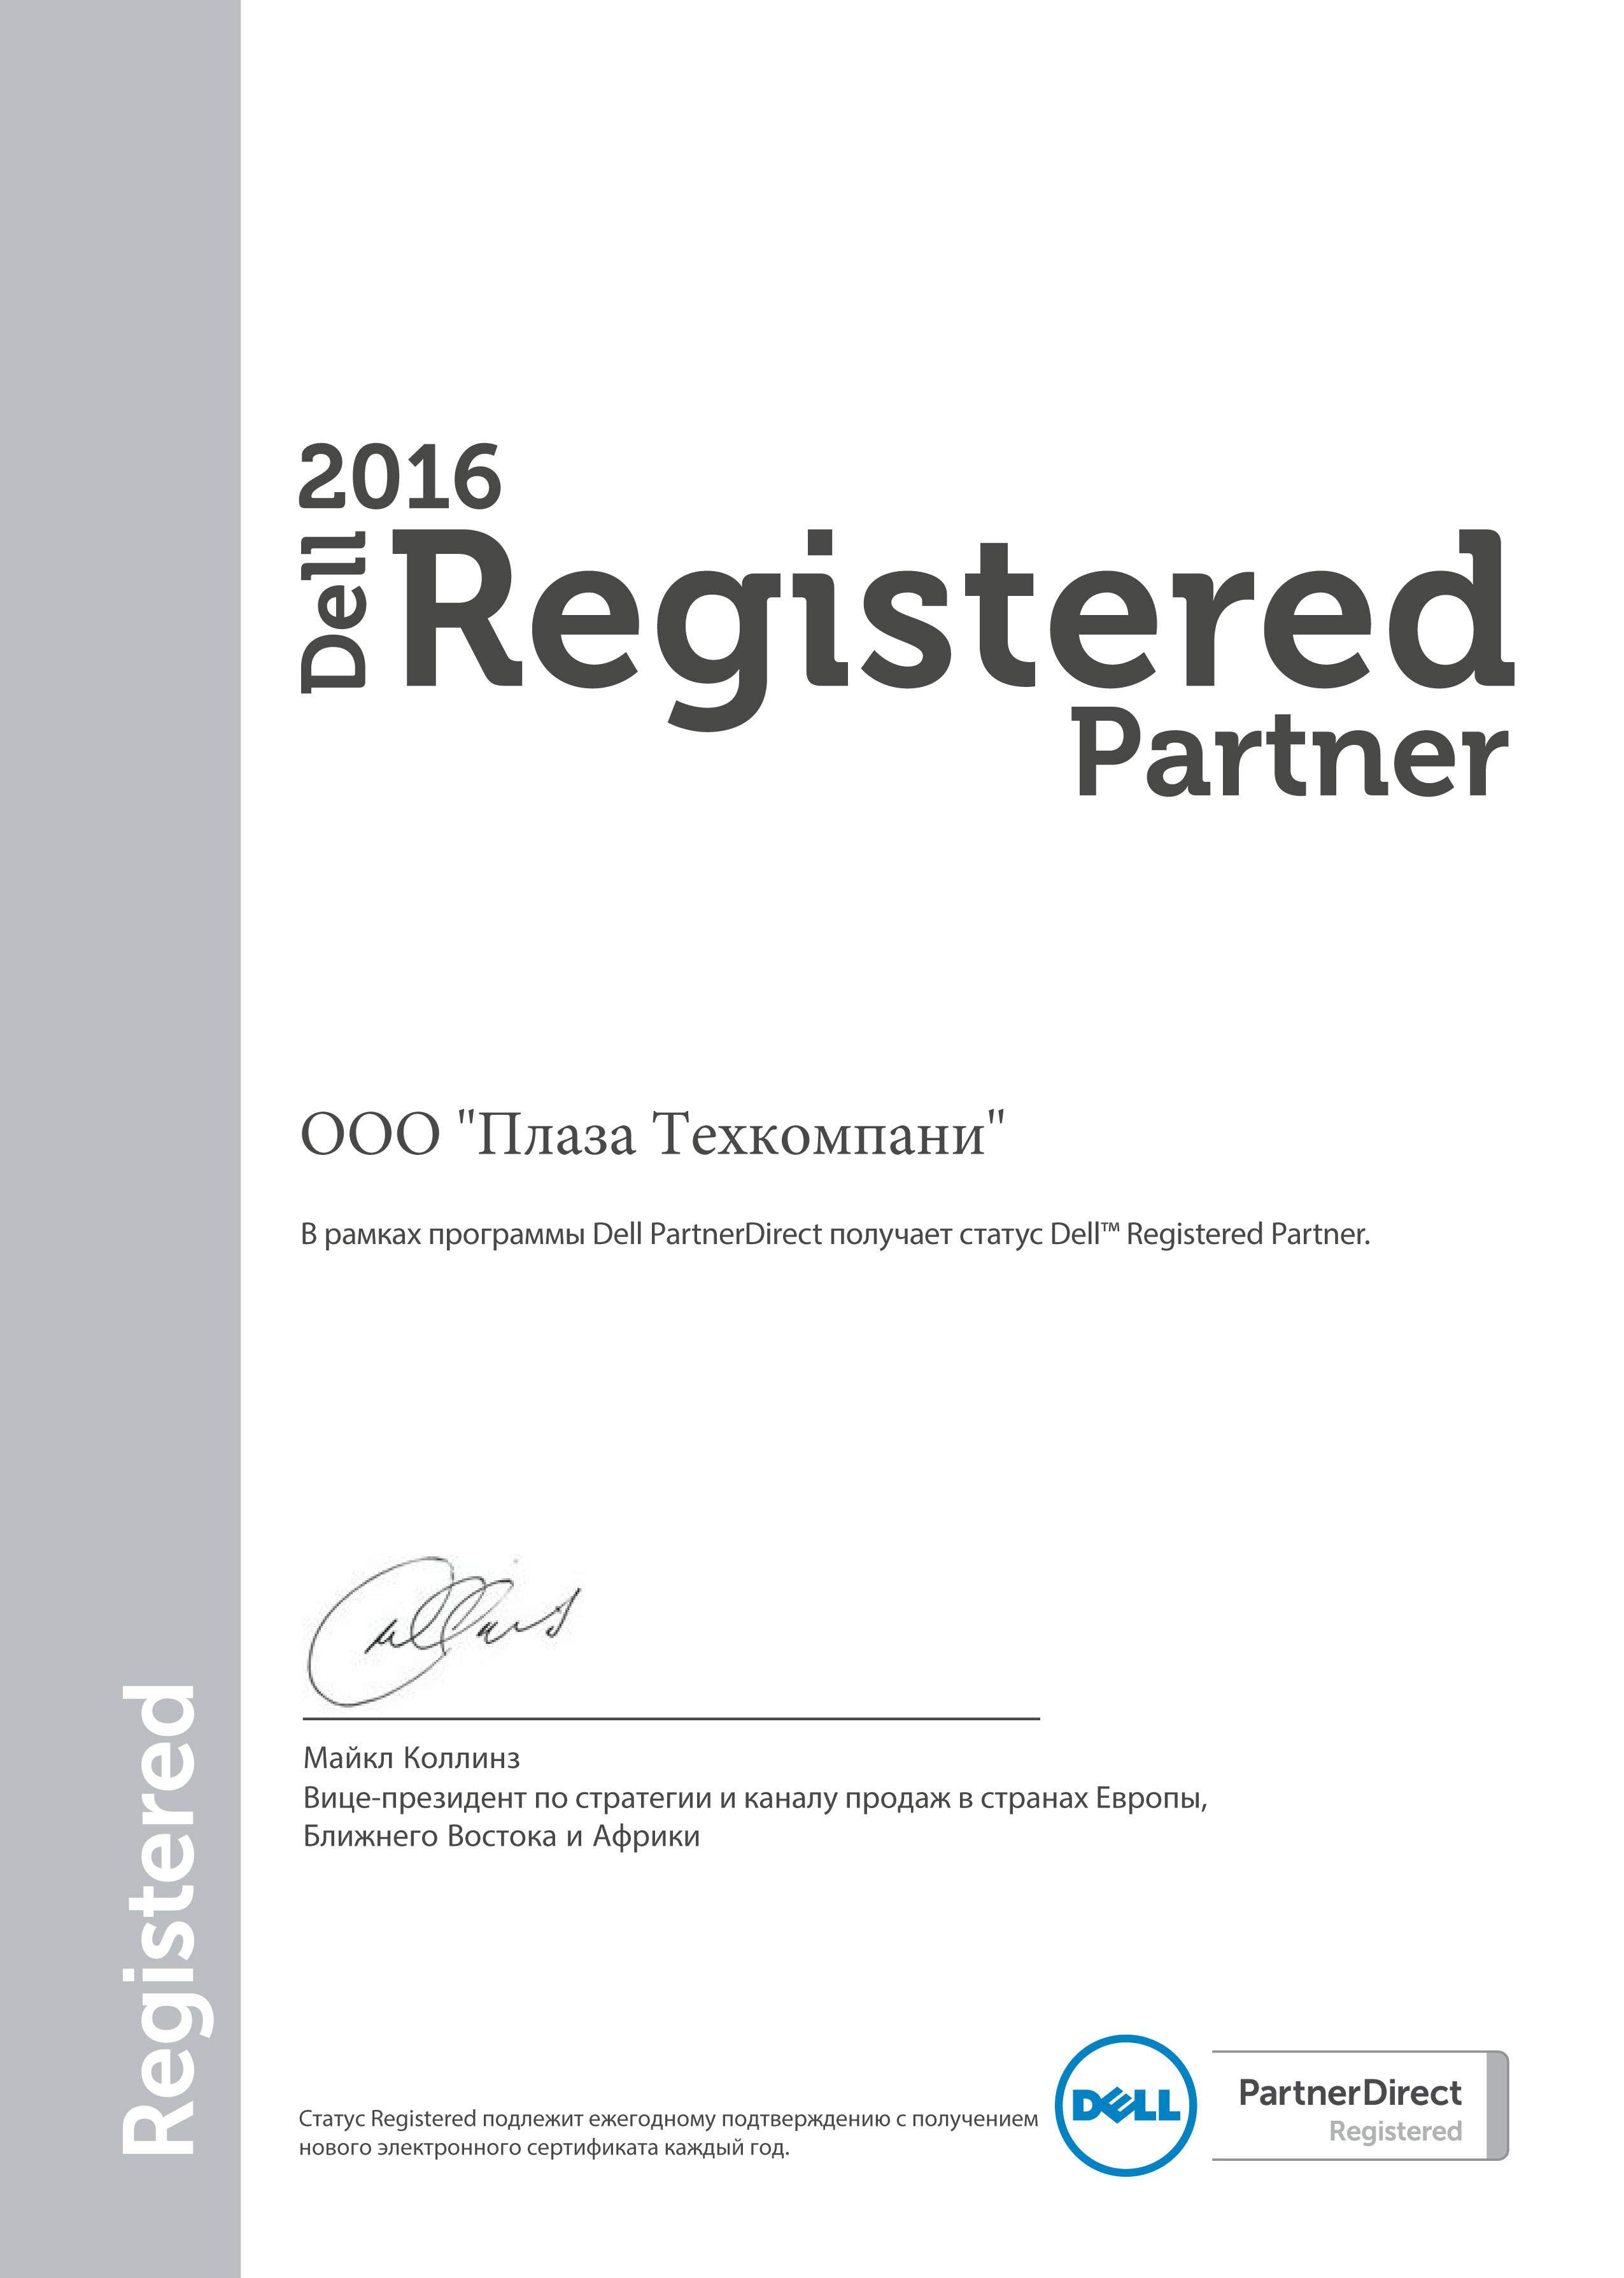 Поставщики ит | ИТ поставщики Dell Partner Direct Registered сертифицированный парнер Сертификат официального поставщика 